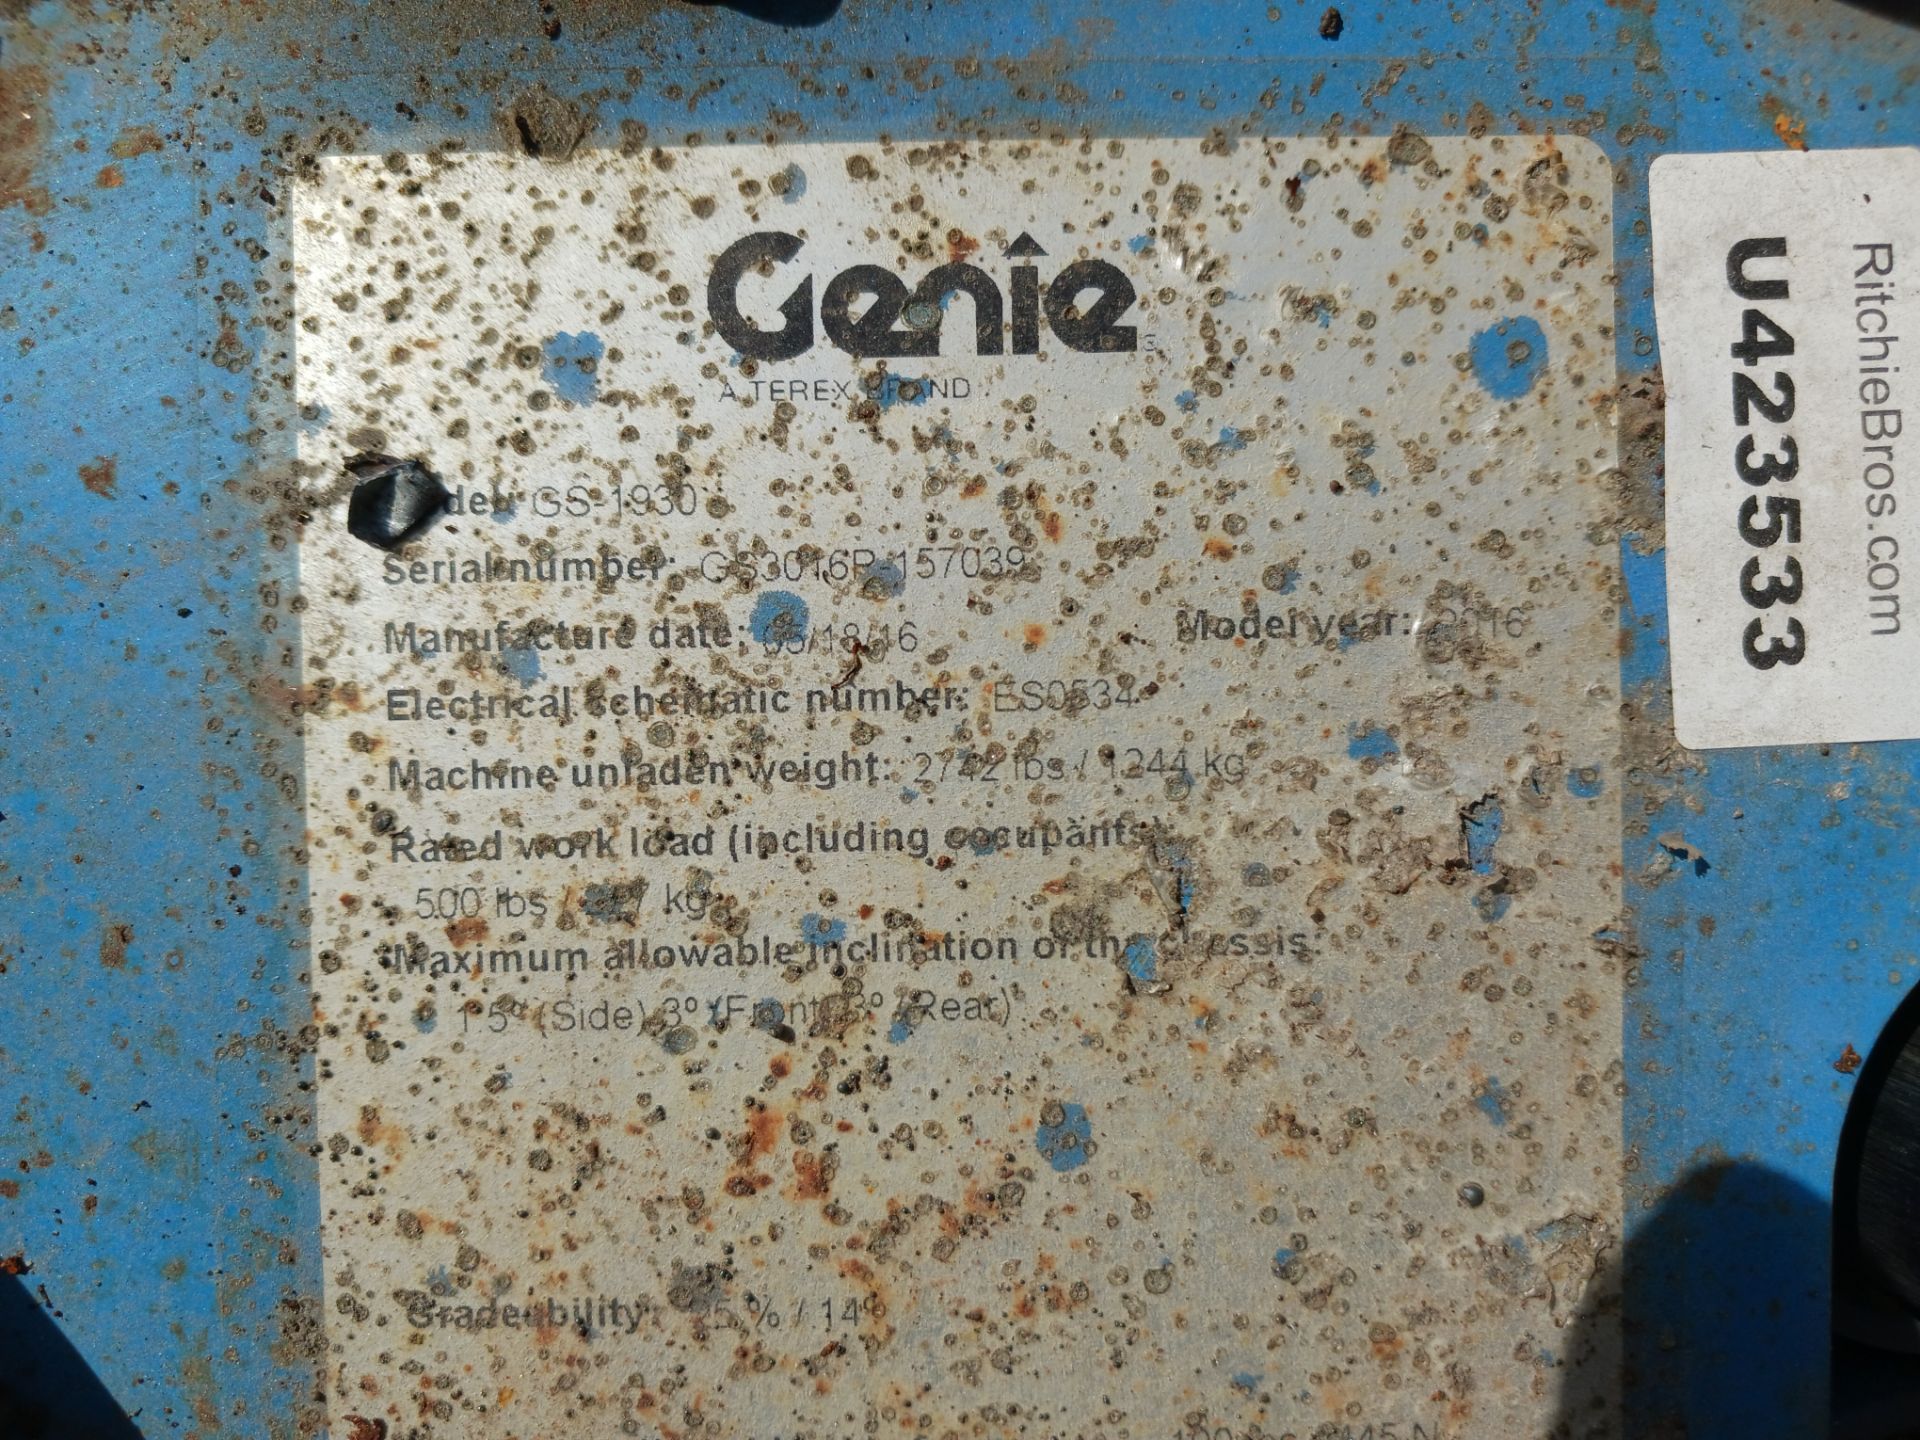 2016 Genie GS1930 19ft 500lb Scissor Lift - Lester, PA - Image 17 of 19